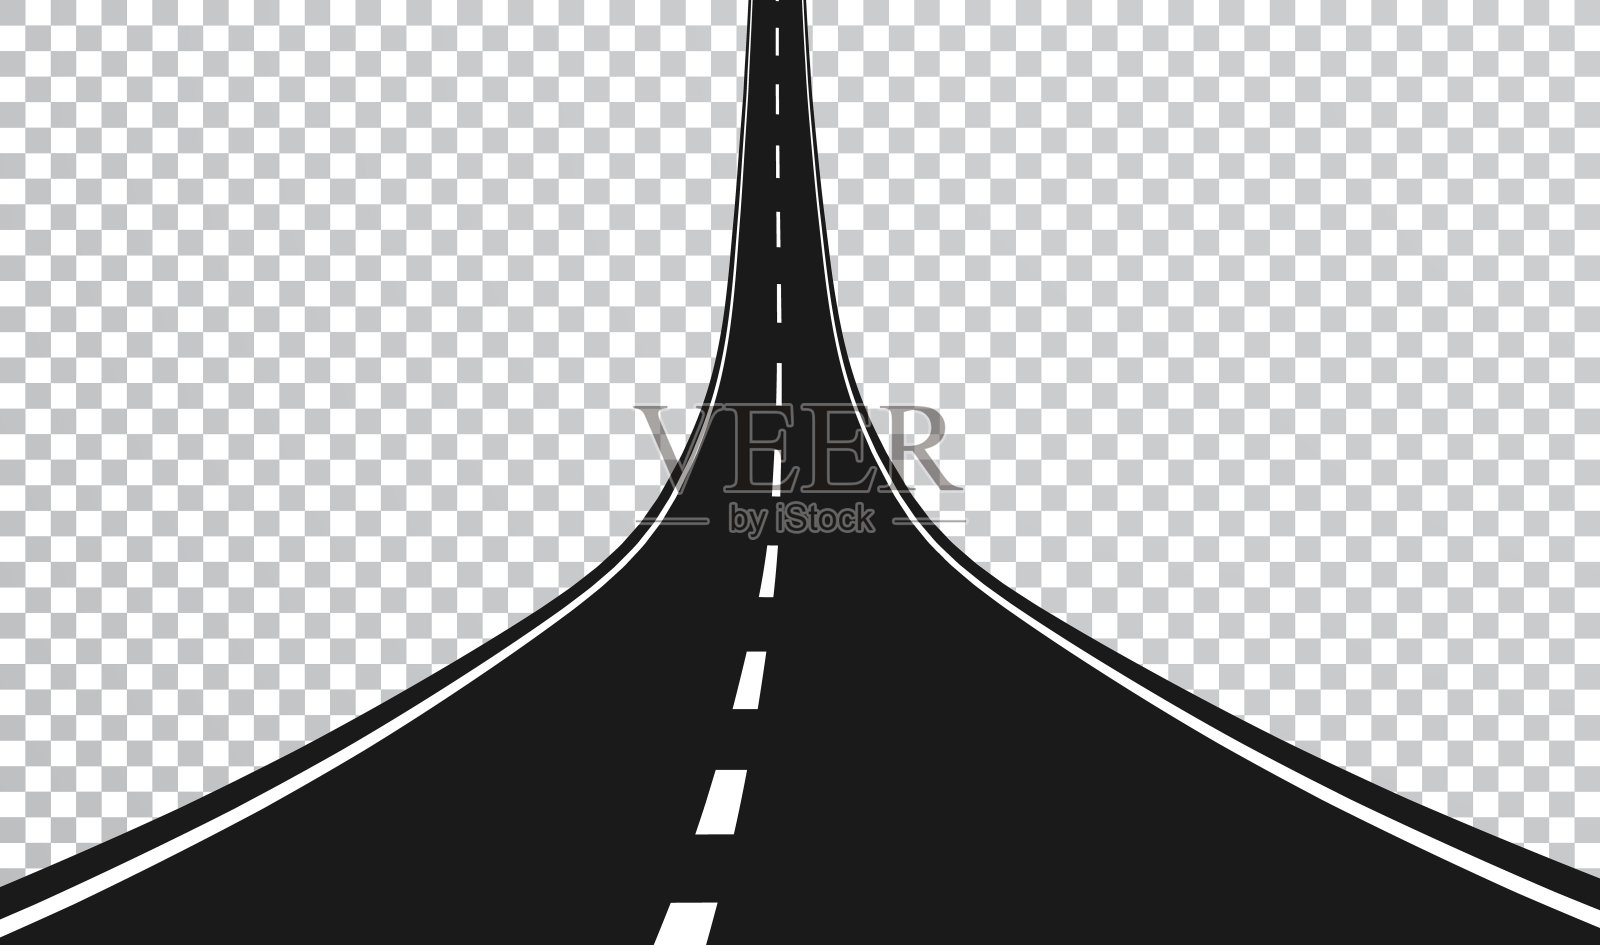 有标记的蜿蜒道路或高速公路。方向,交通工具集。矢量图设计元素图片